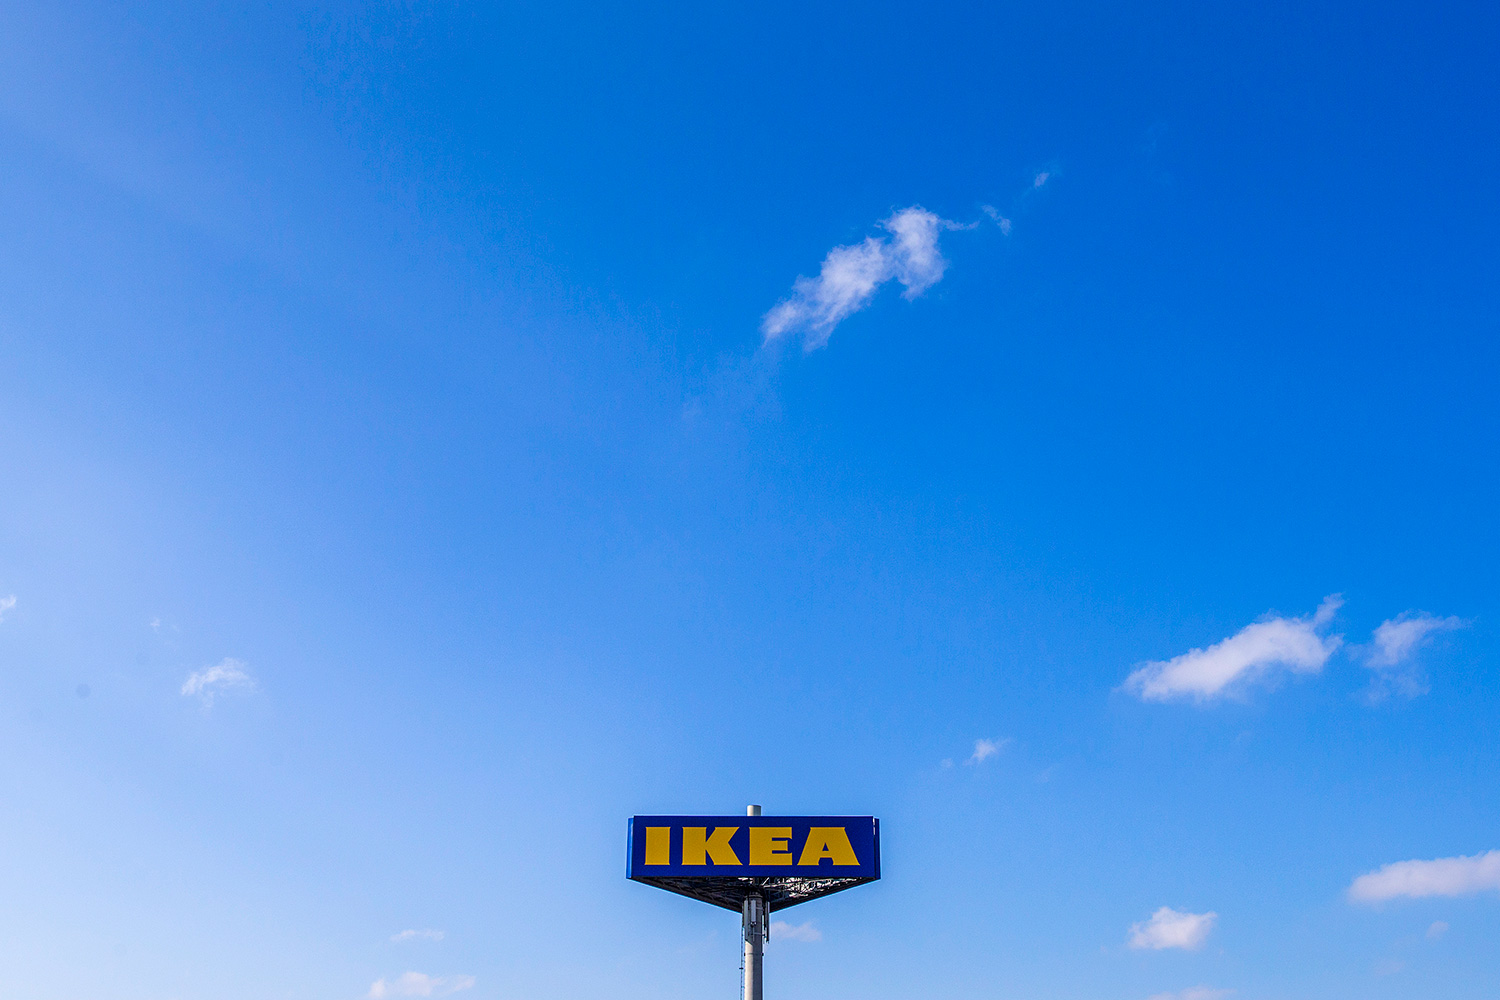 Ikea retira del mercado la cómoda Malm tras la muerte de seis niños